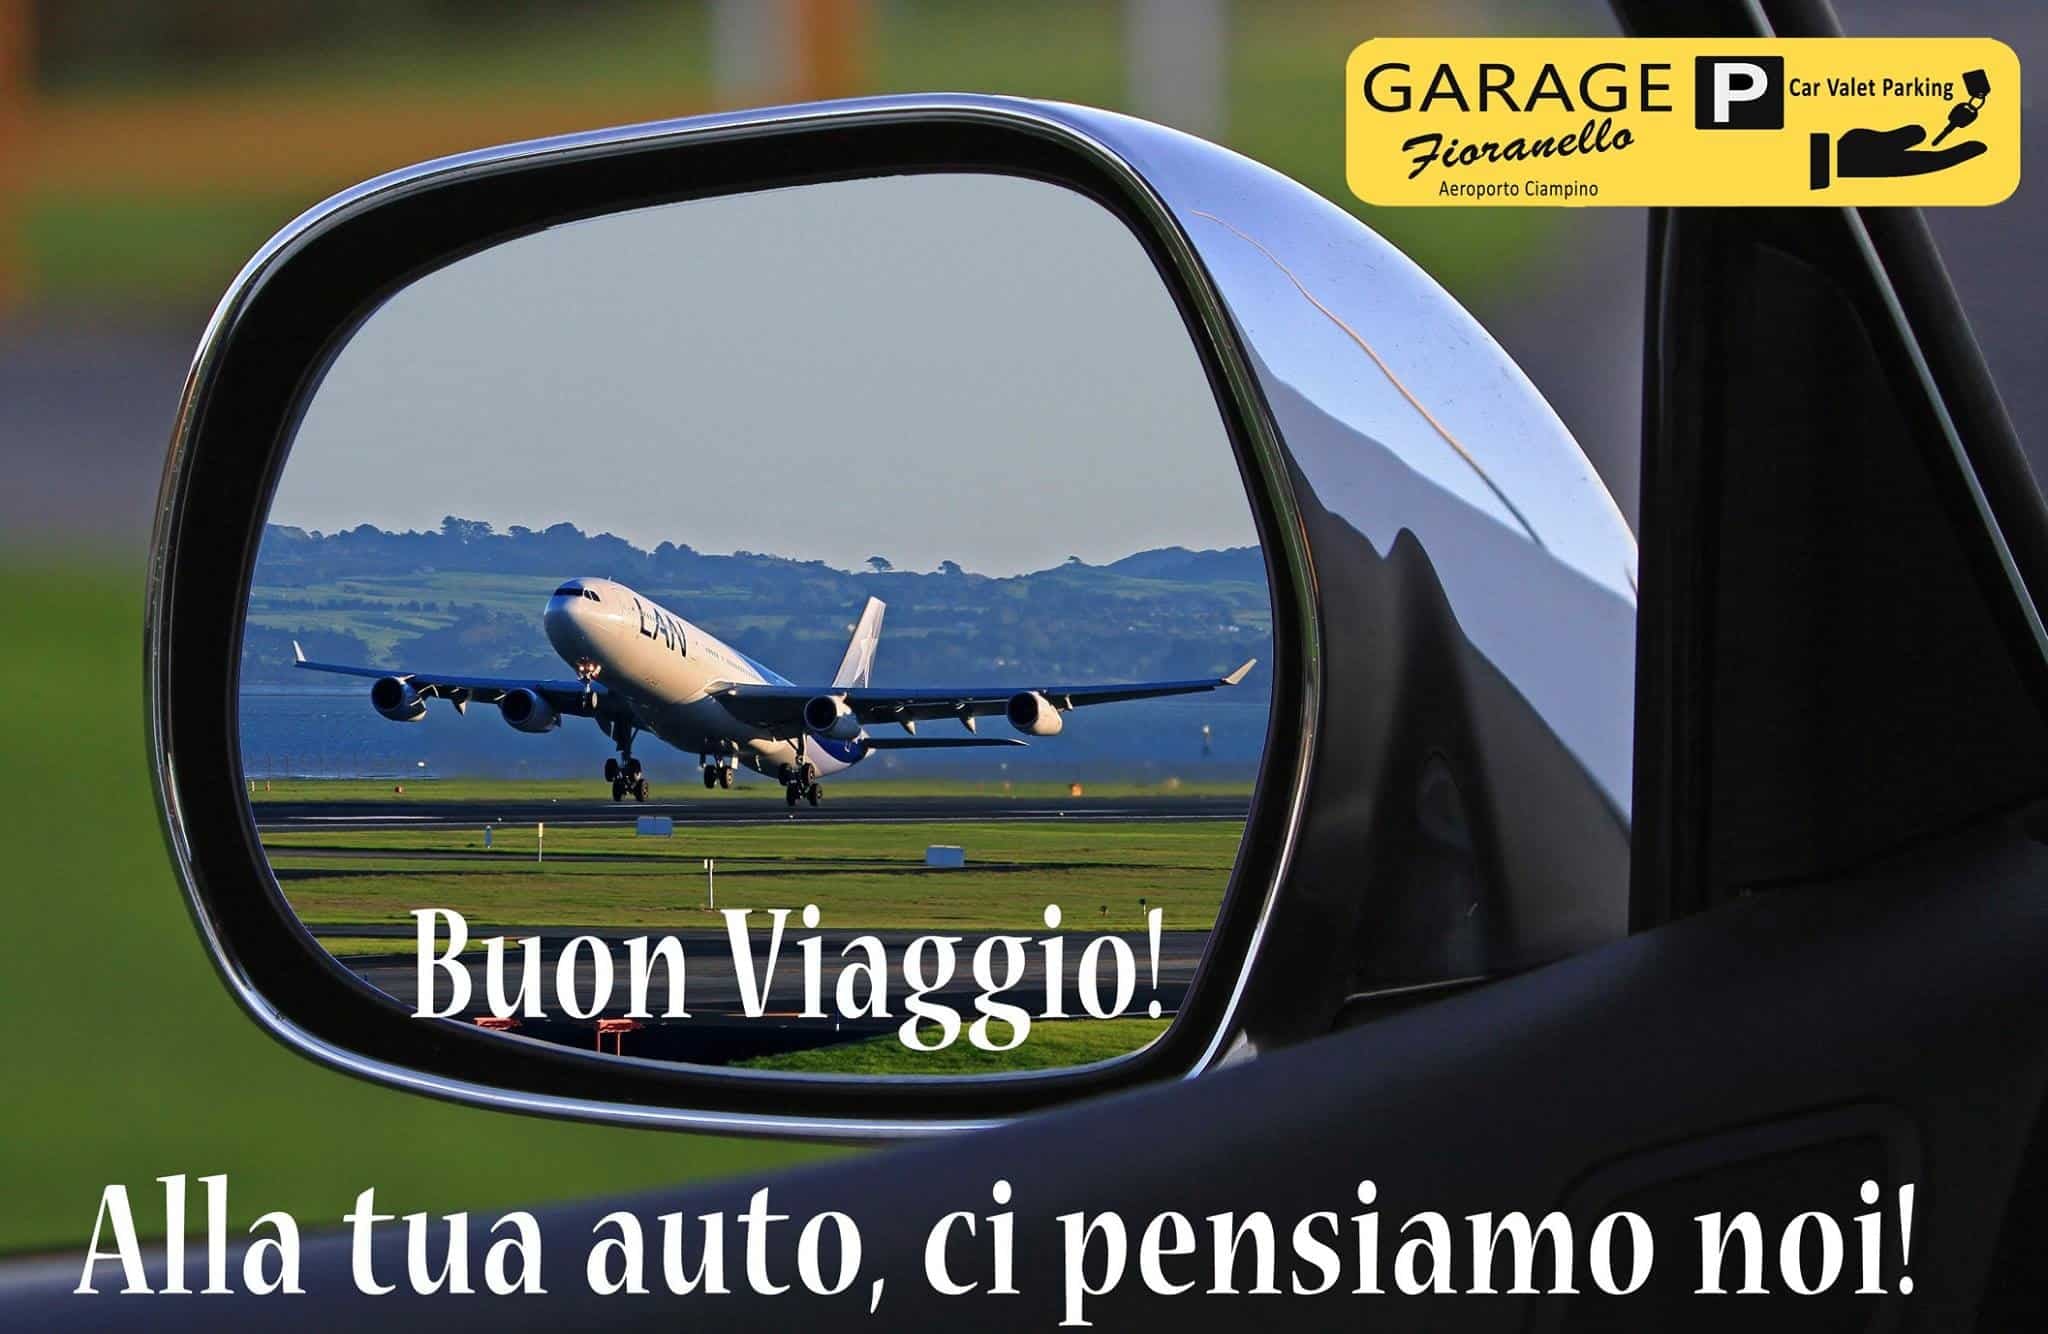 Specchietto retrovisore Garage Fioranello FCO -  Aeroporto Roma Fiumicino